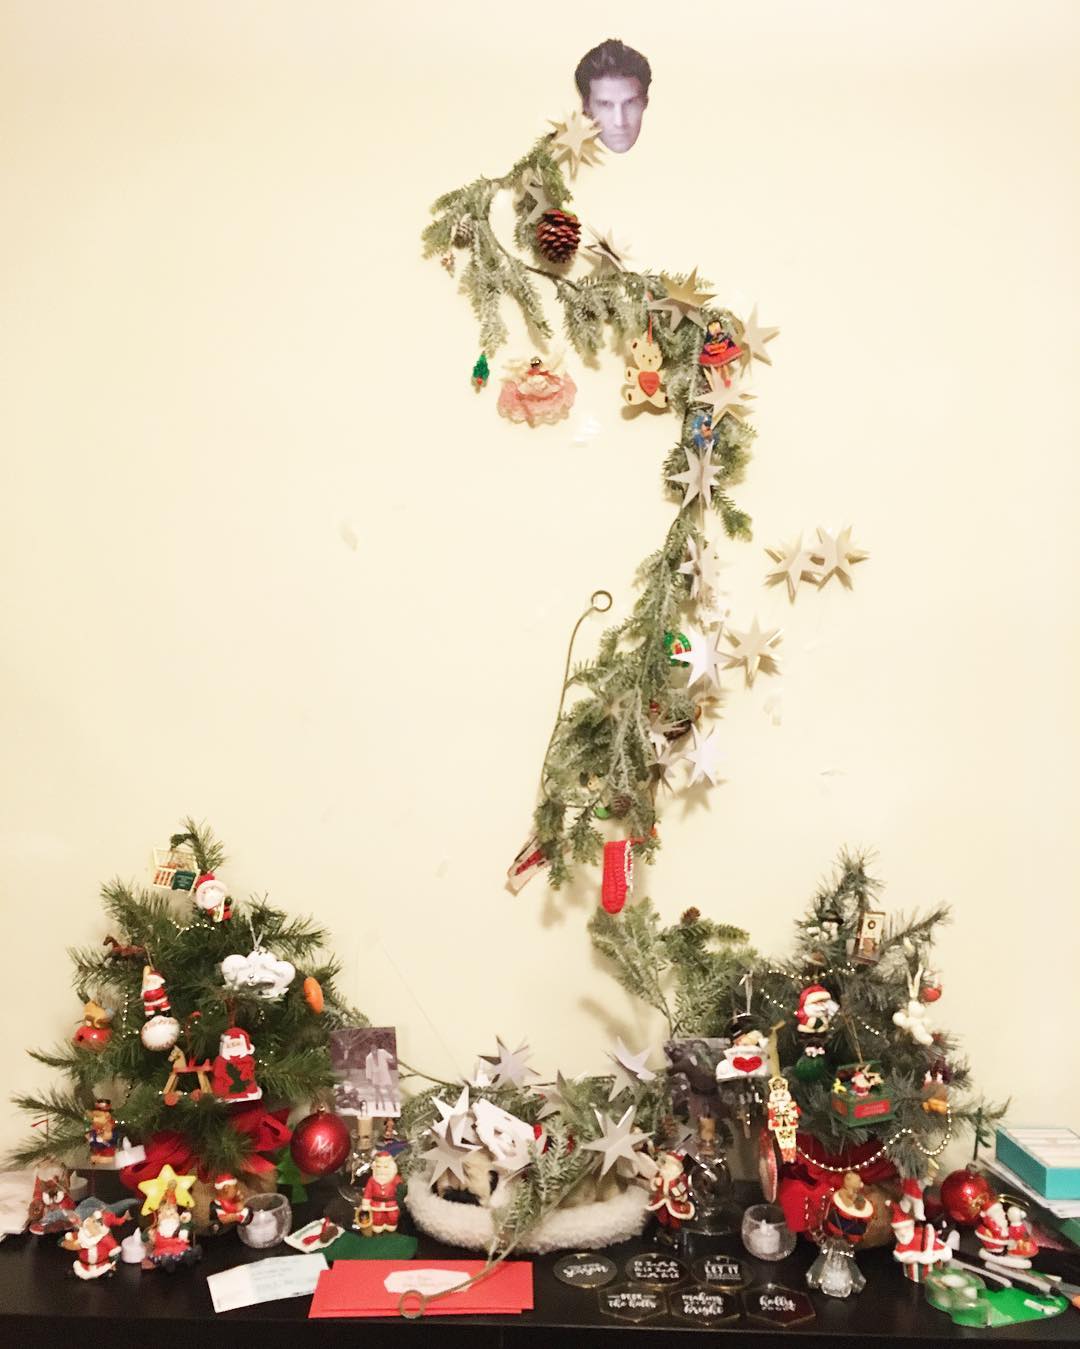 15 decoraciones navideñas mal hechas que no deberían existir